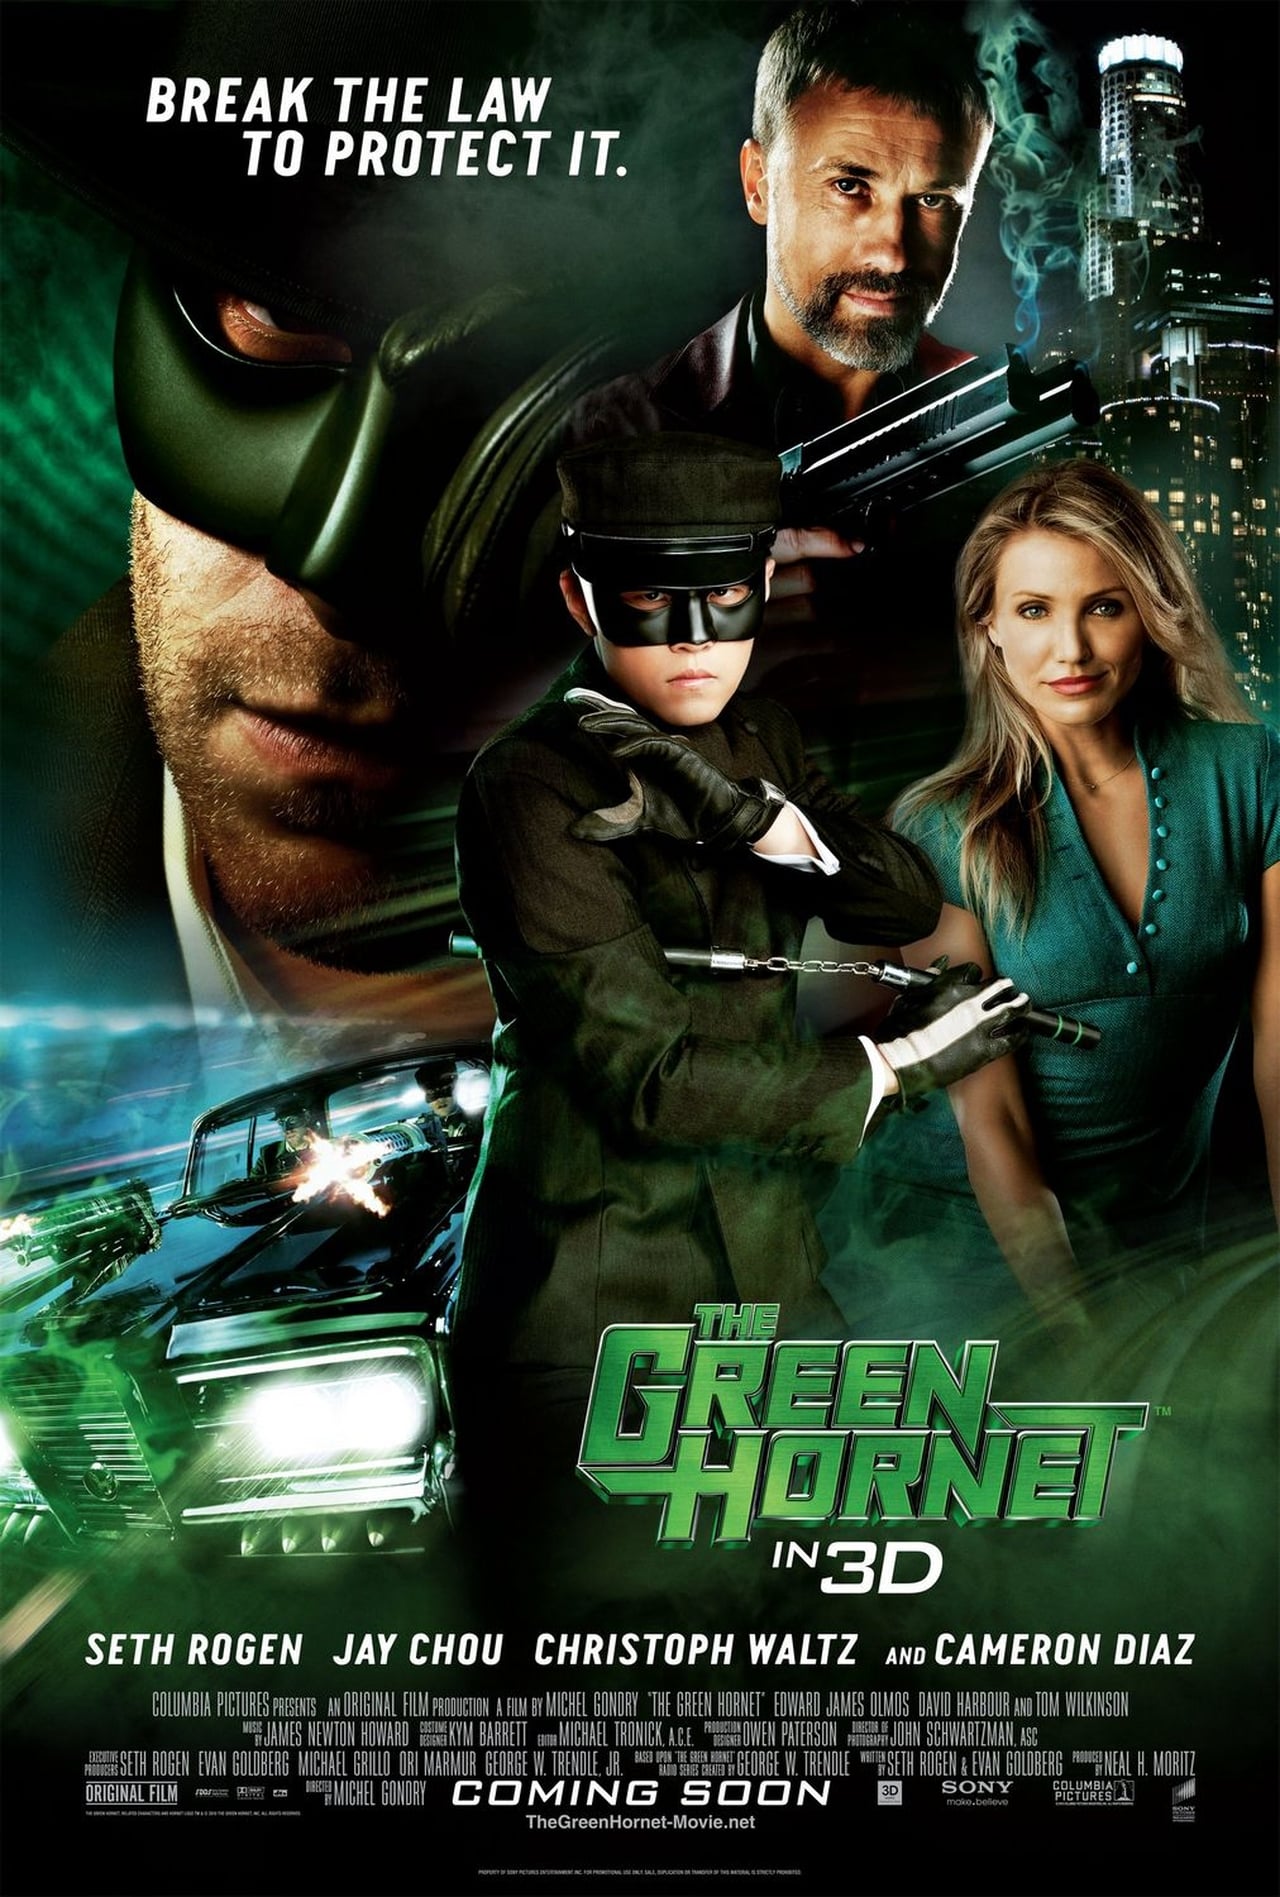 The Green Hornet (2011) 448Kbps 23.976Fps 48Khz 5.1Ch DVD Turkish Audio TAC